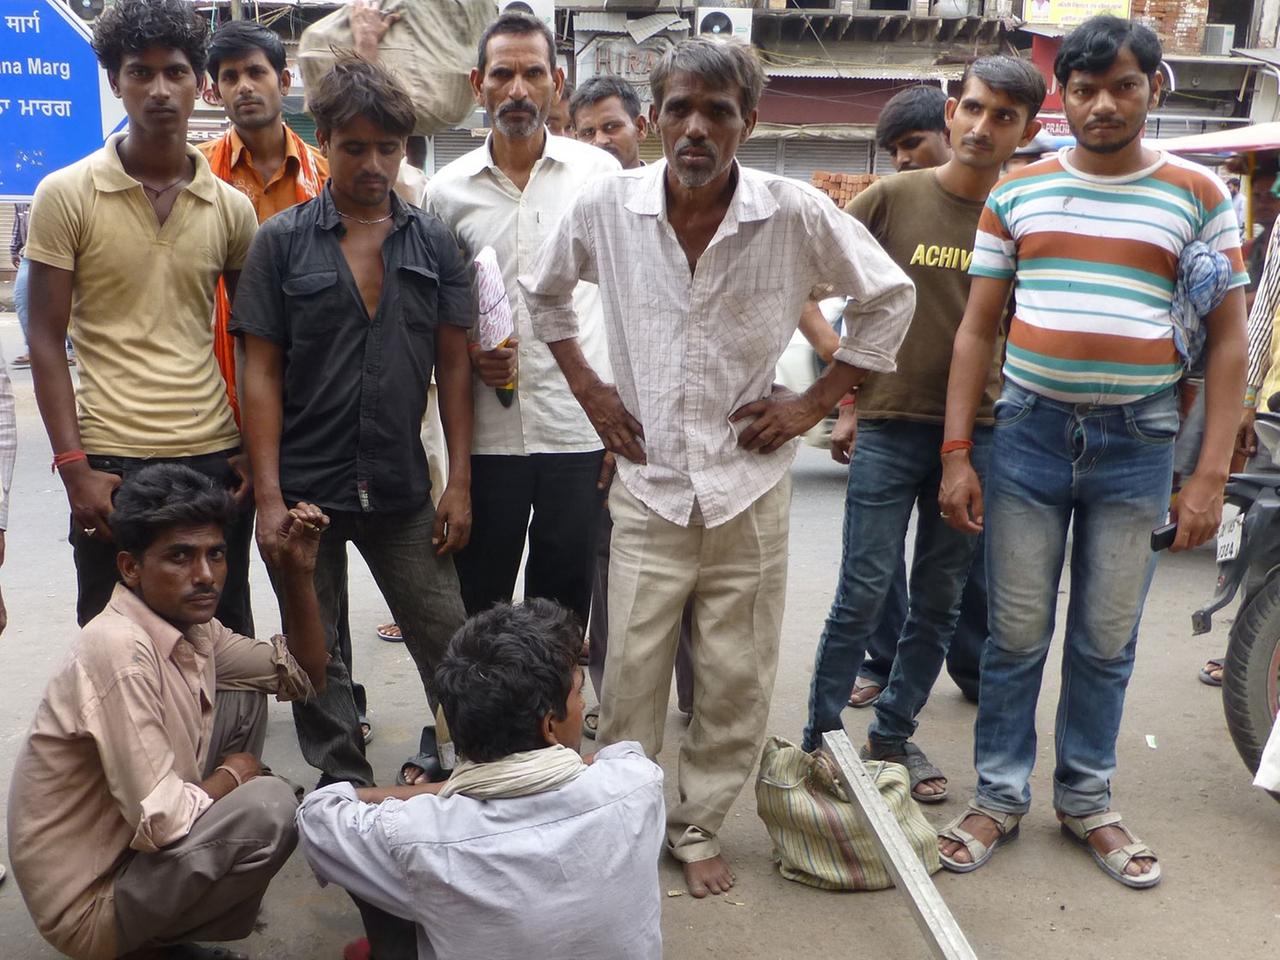 Bara Tooti Chowk in der Altstadt von Neu-Delhi: Männer warten auf dem Tagelöhner-Markt auf Auftraggeber.